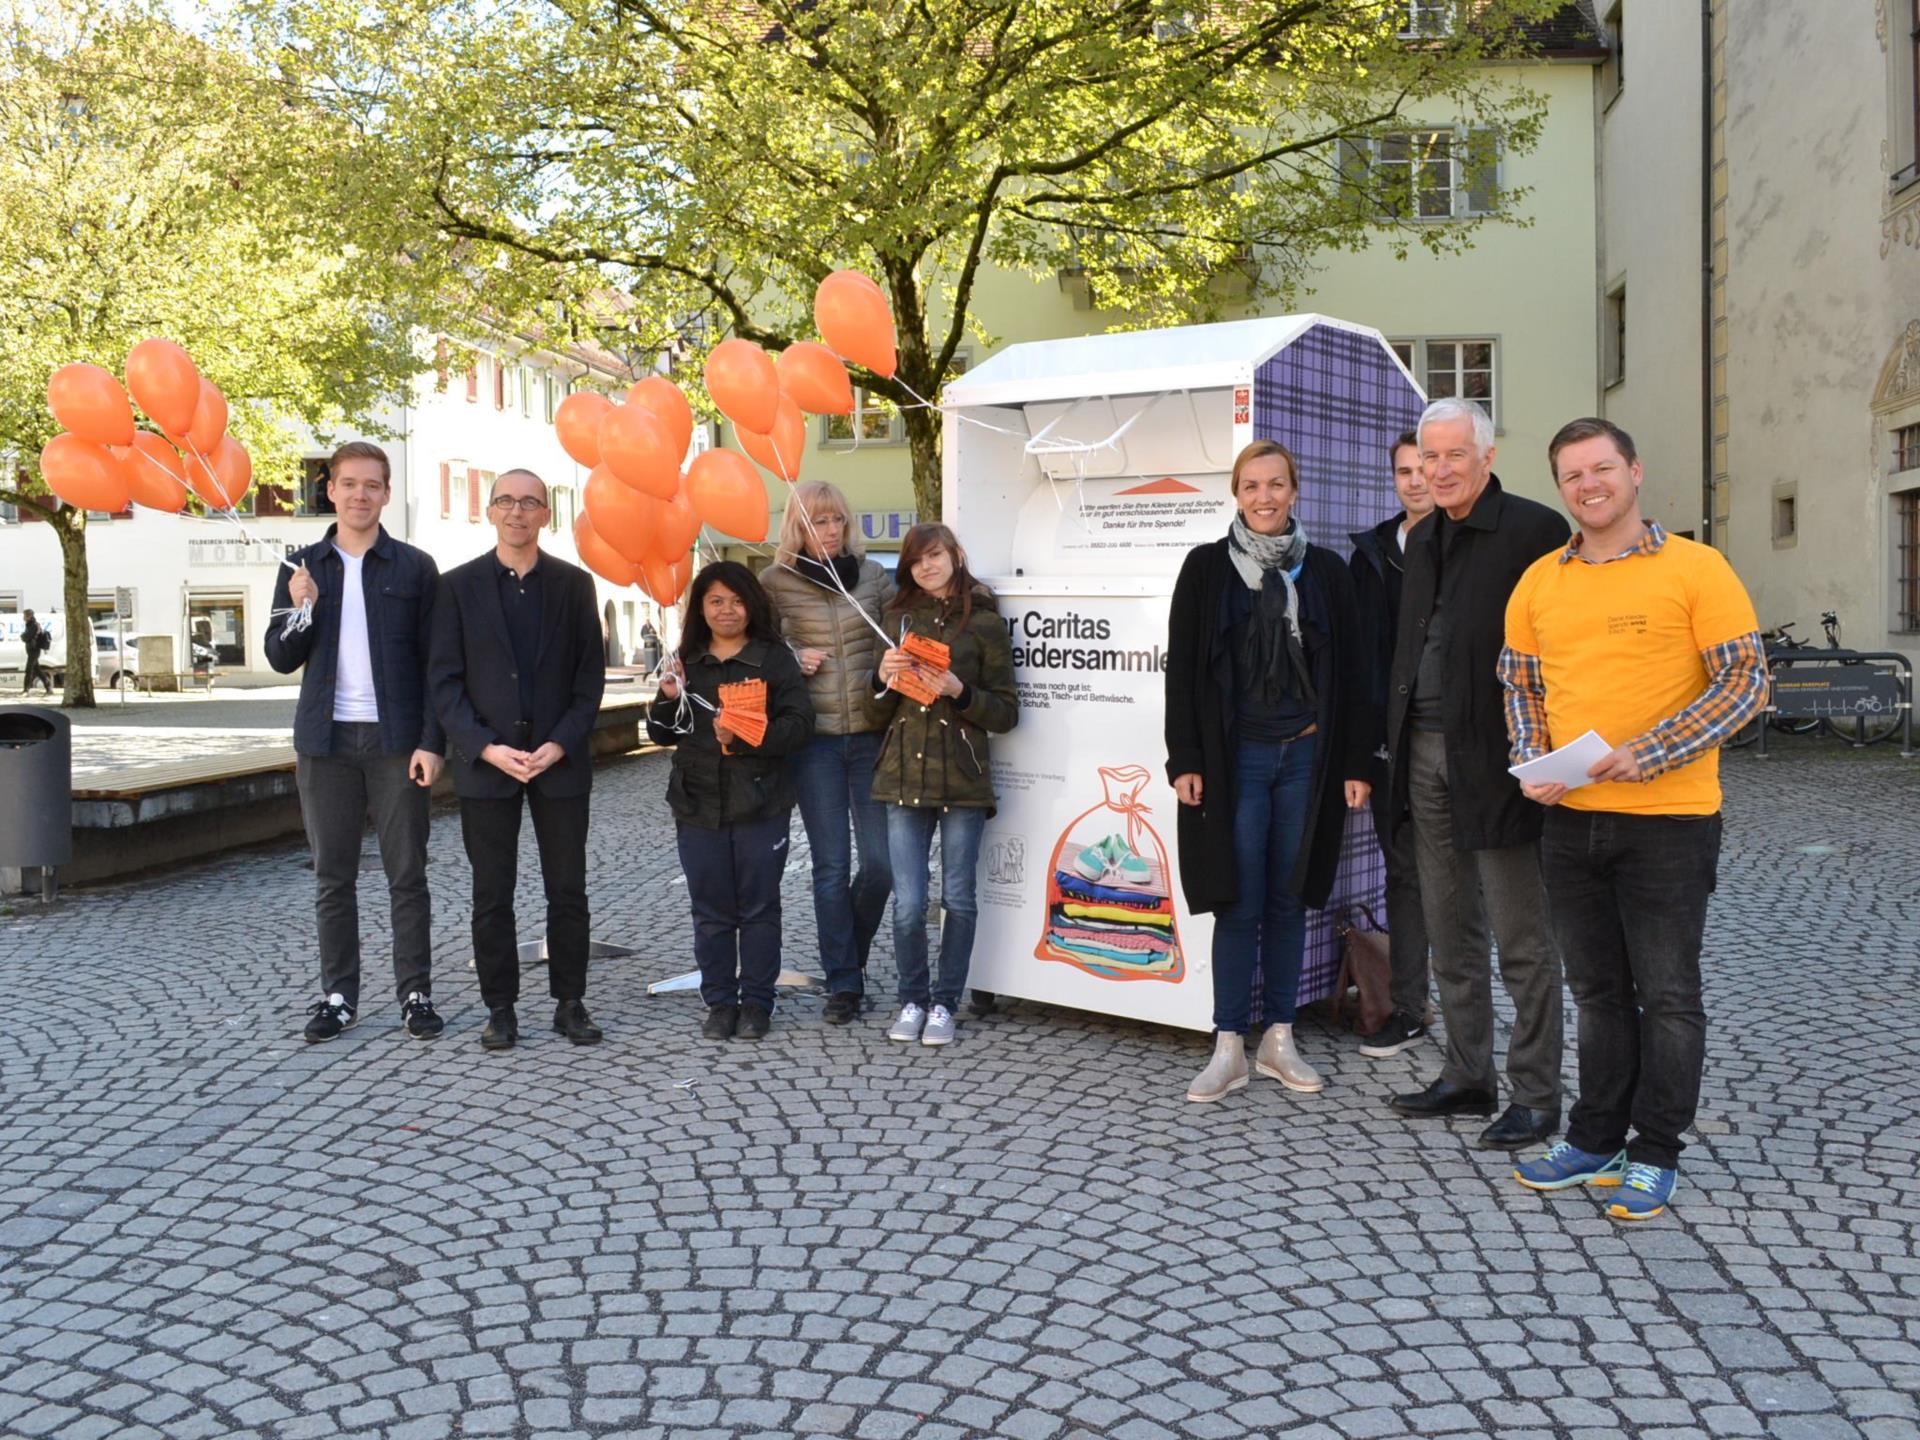 Das war der "Orange Day" in Feldkirch Feldkirch VOL.AT